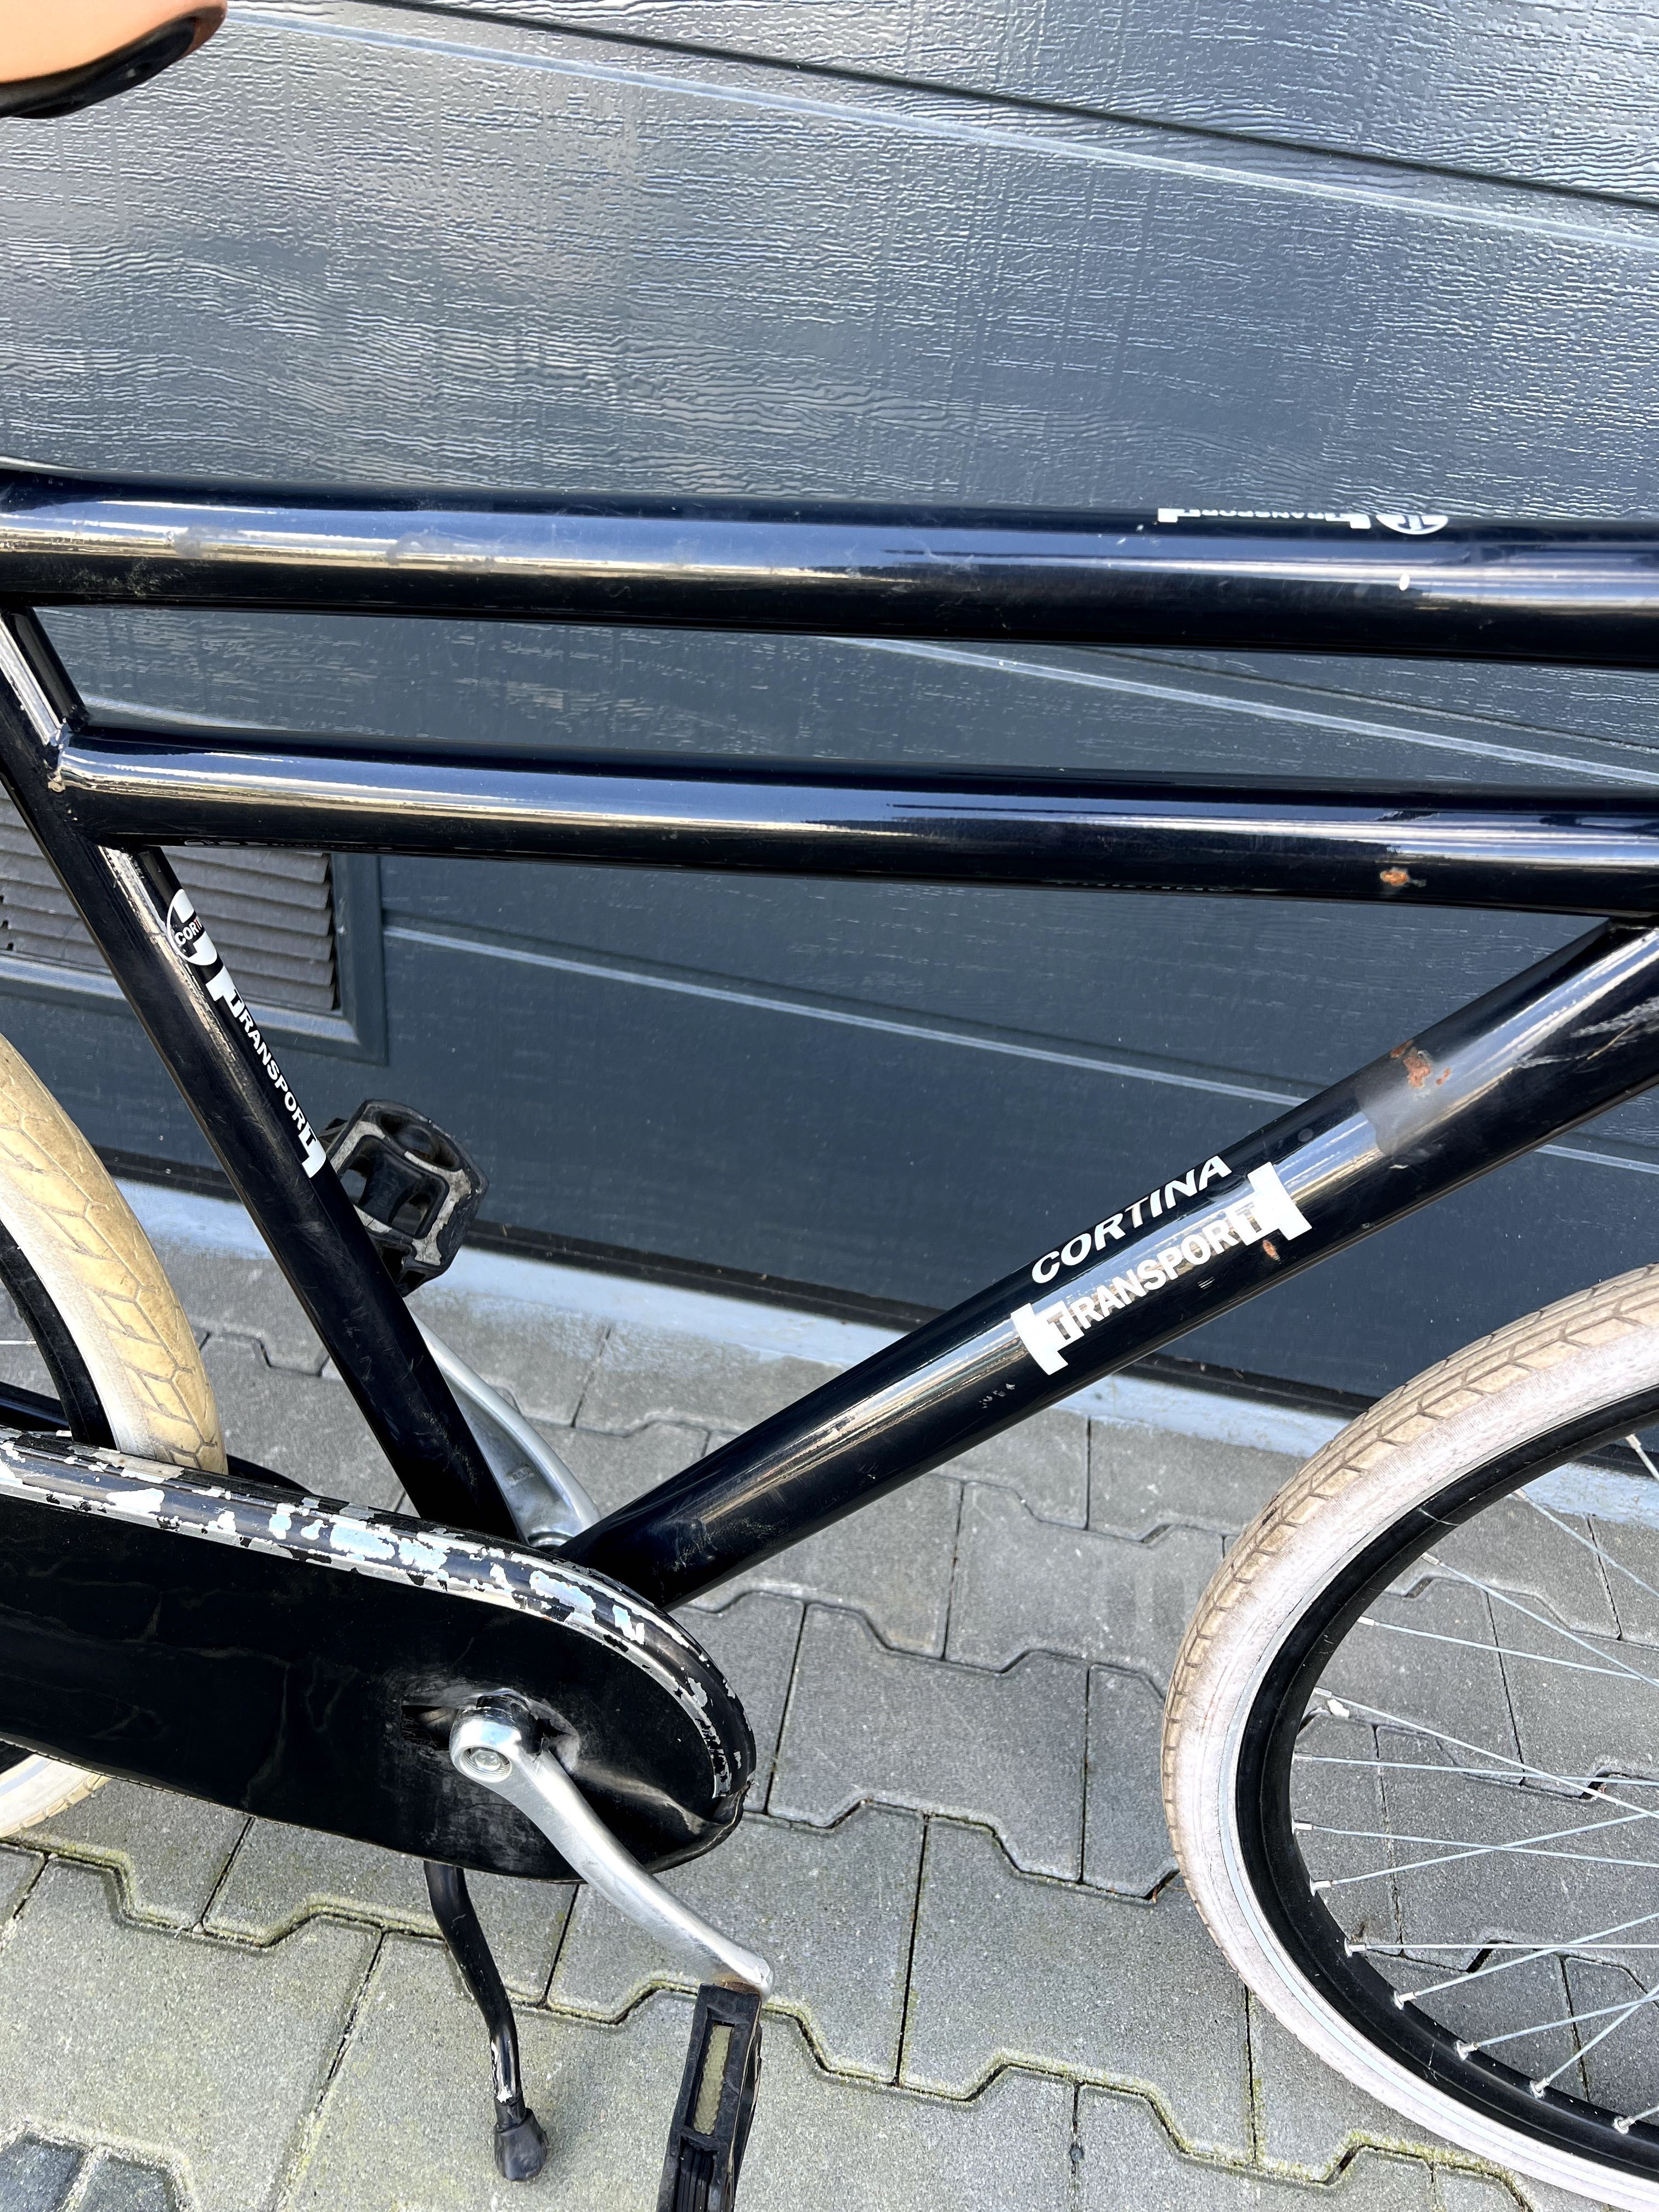 Rower miejski holenderski Cortina Transport koła 28 cali